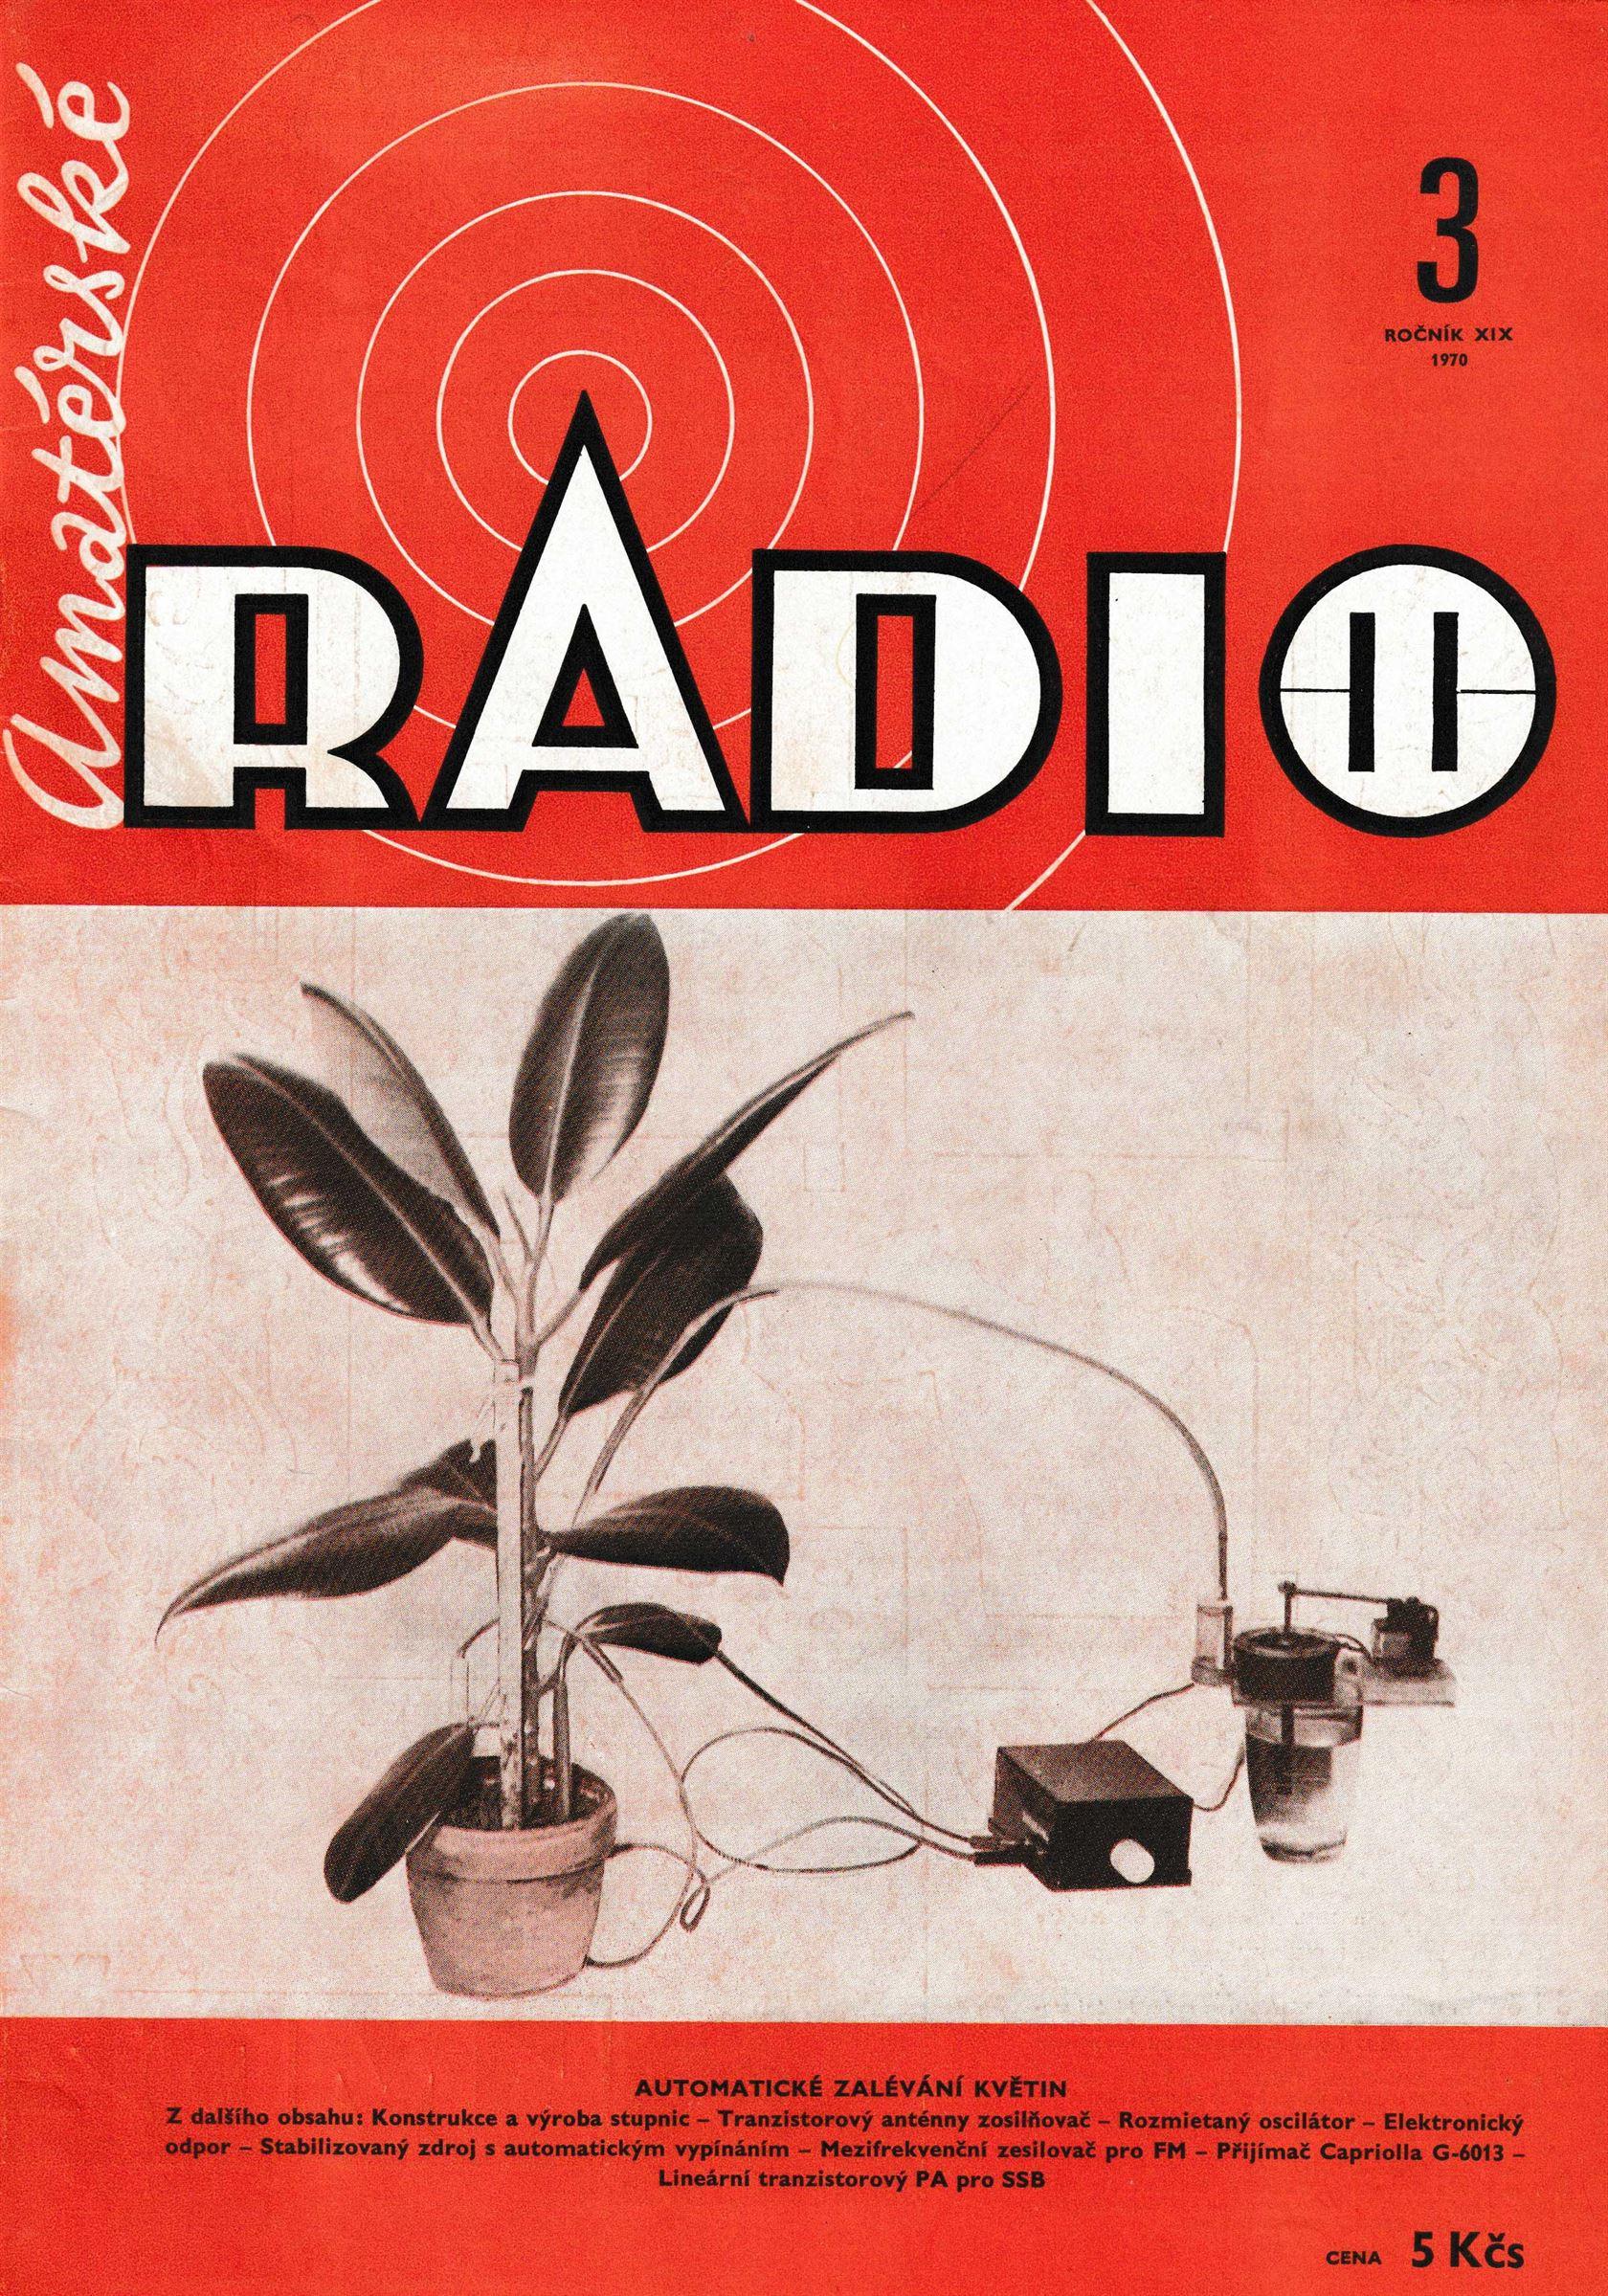 Amatérské Radio 3. Ročník XIX ČÍSLO 3 1970 - Výborný stav s drobnými známkami opotřebení